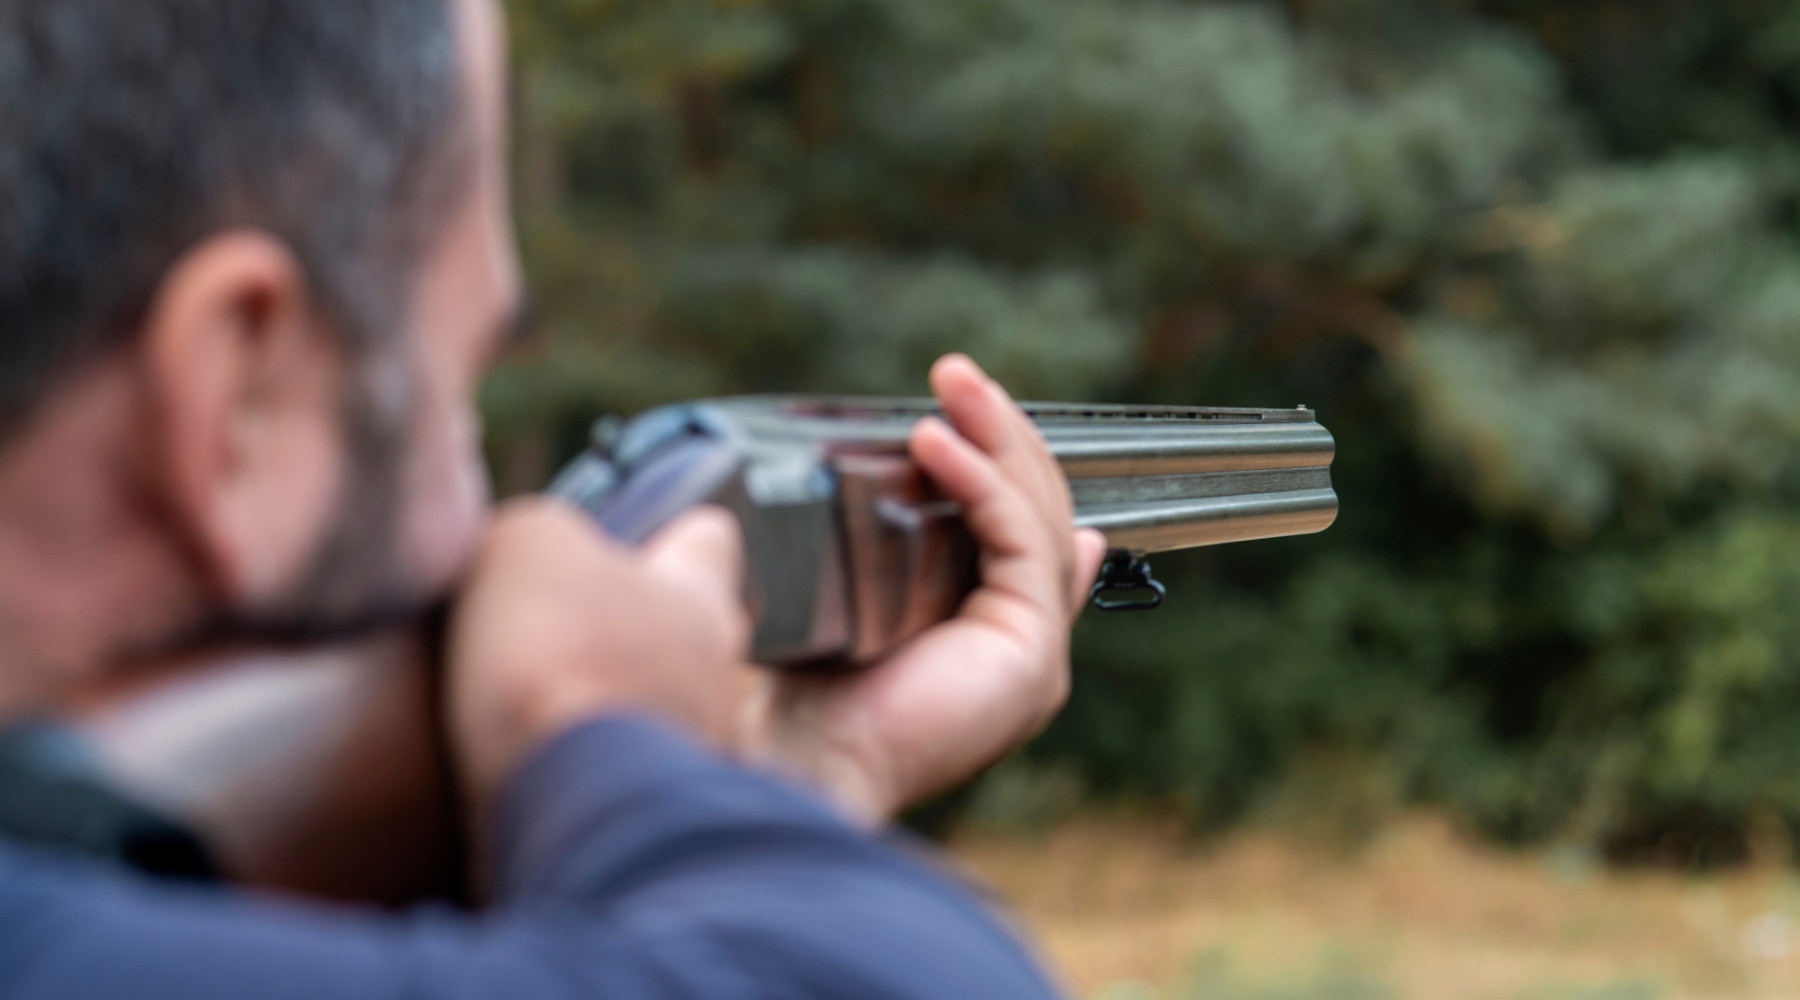 Presentato ricorso contro il calendario venatorio della Lombardia: cacciatore prende la mira con fucile sovrapposto